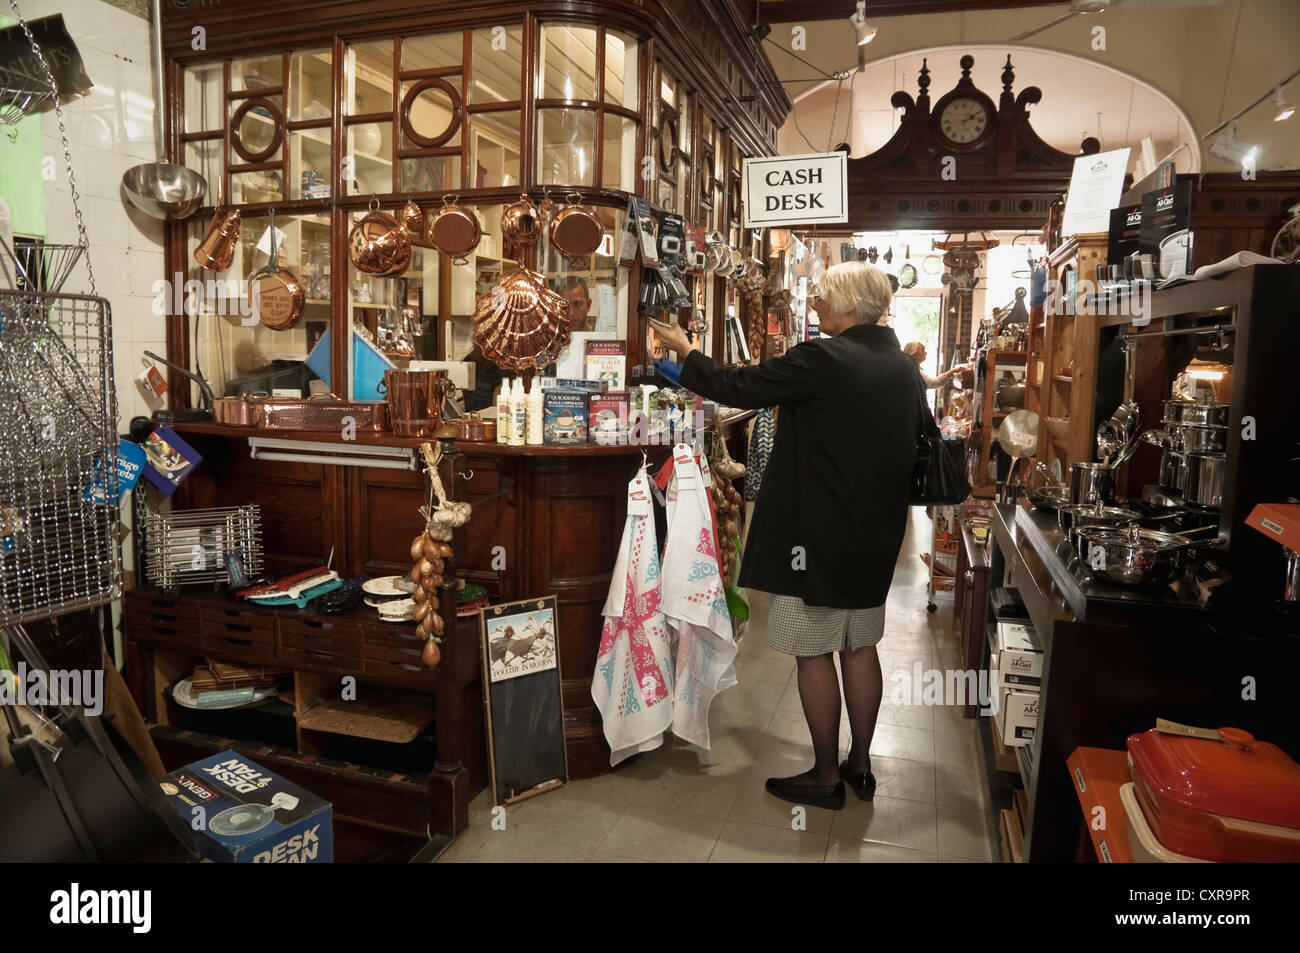 Kasse-Zeichen im Innern der Kitchener-Shop - ein traditionelles Geschirr-Shop. Cheltenham, Vereinigtes Königreich. Stockfoto